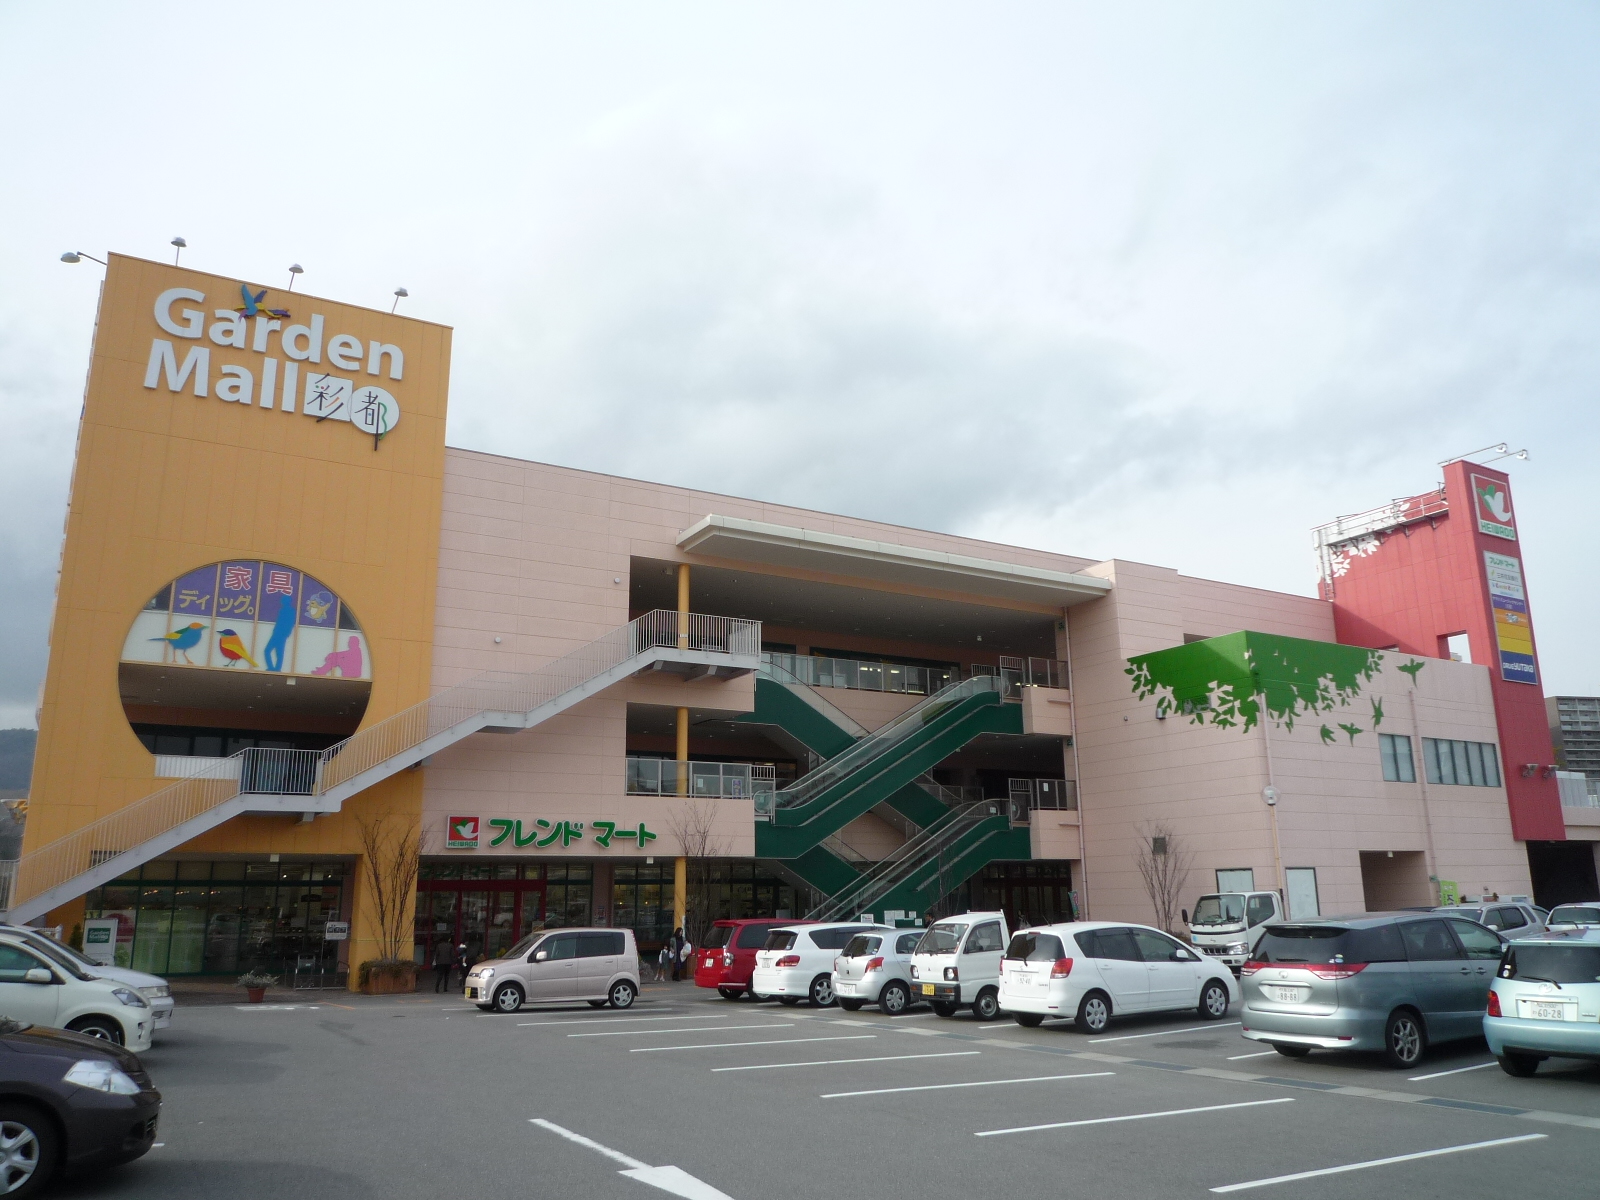 Shopping centre. 62m to Garden Mall Saito (shopping center)